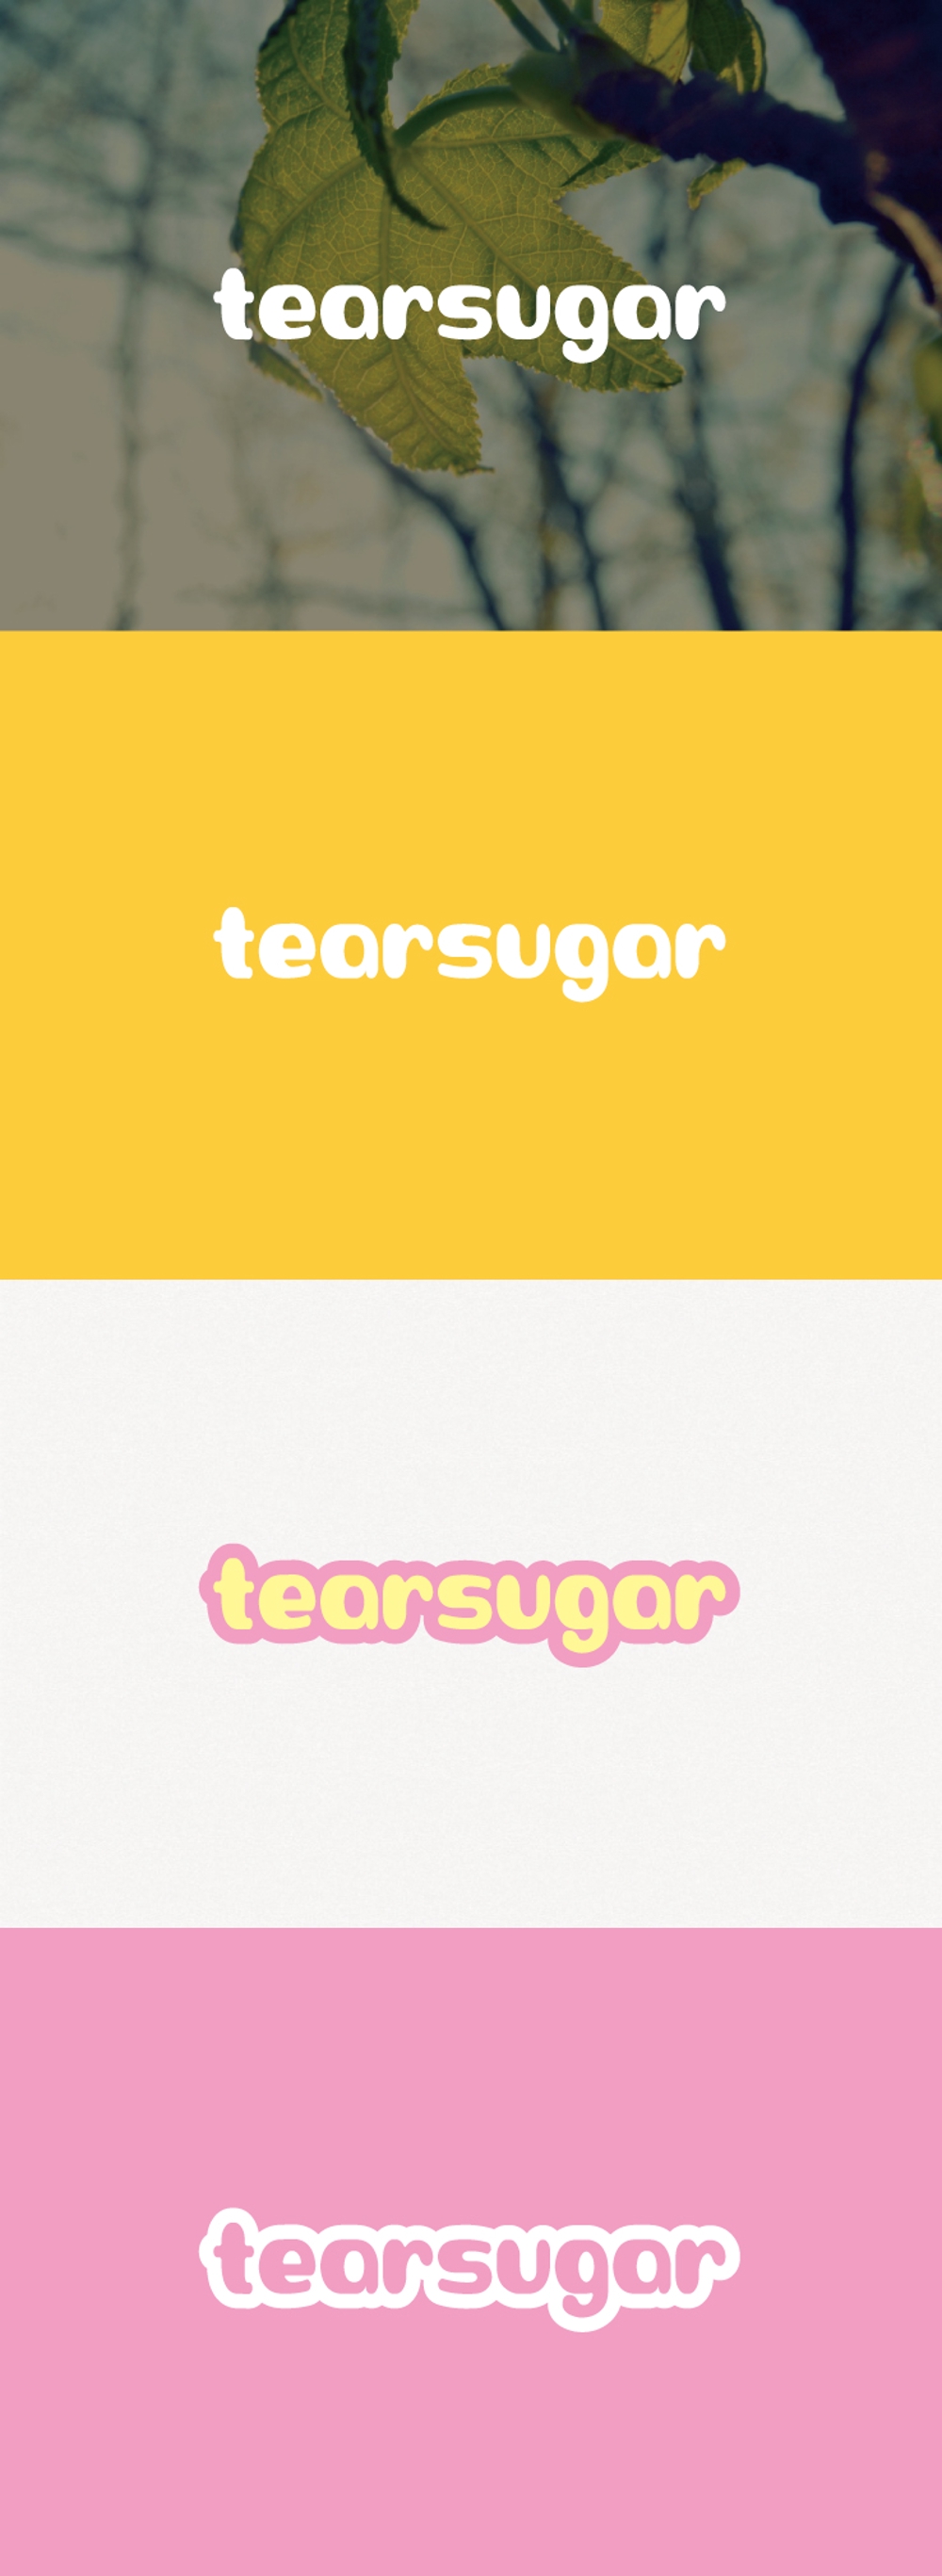 商品名【tearsugar】レインボーのわたあめ商品のロゴデザイン